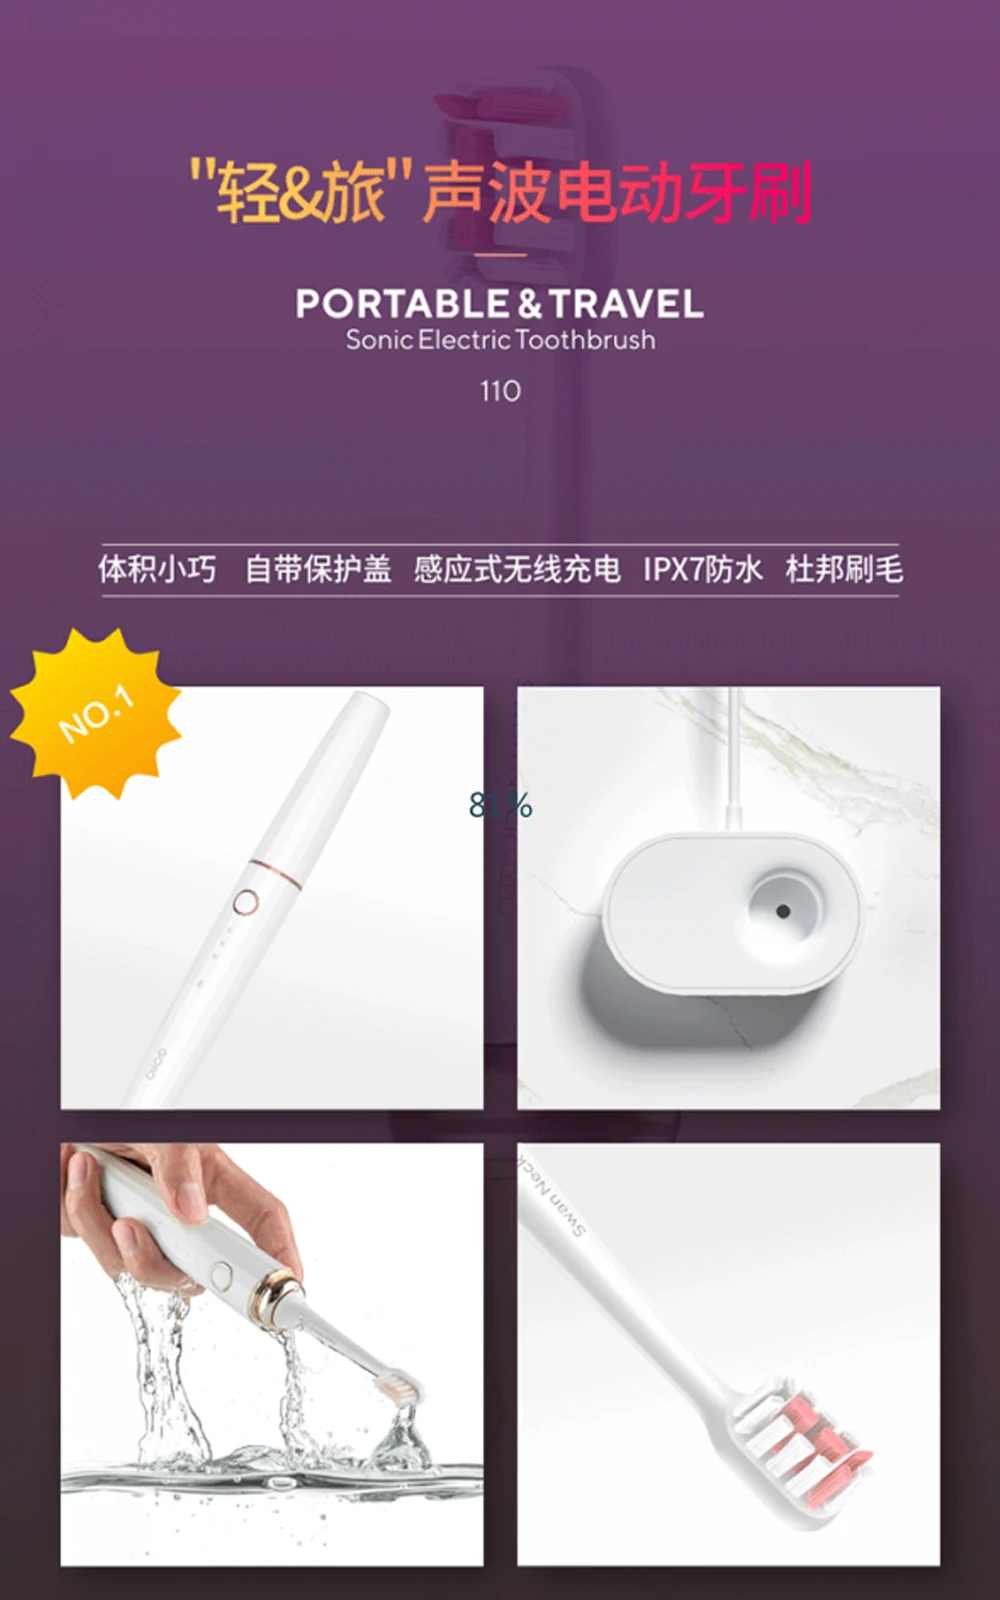 XiaoMi Mijia 3life портативная Мини электрическая зубная щетка Беспроводная Индукционная зарядка водонепроницаемая для умного здорового использования в путешествиях